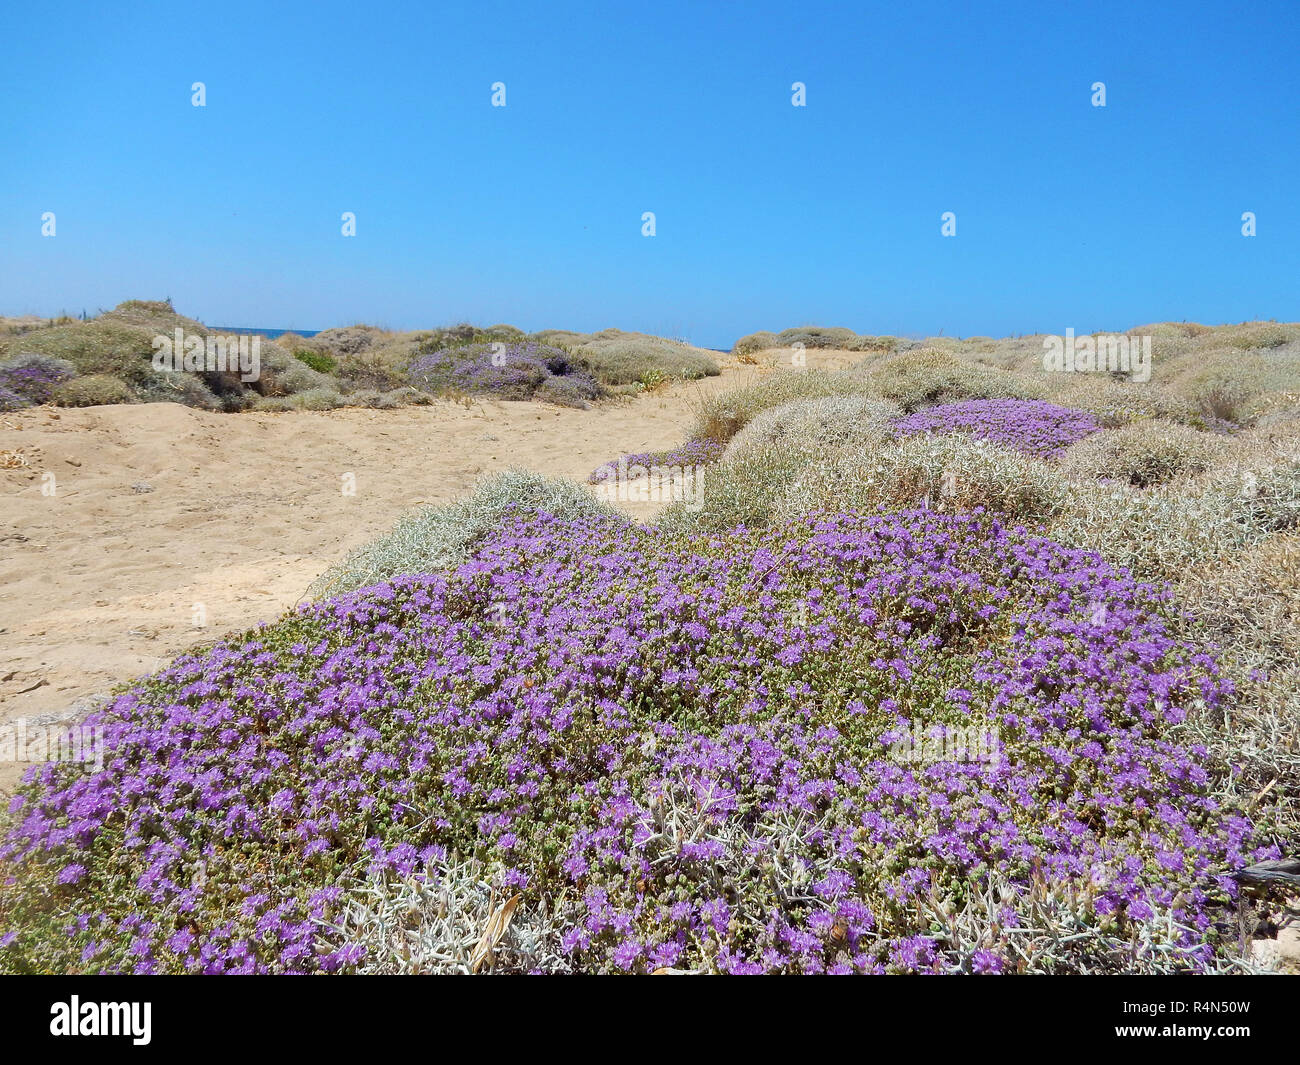 Les dunes de sable sur une plage de Crète, avec des buissons à fleurs de thym Méditerranéen (Thymbra capitata) Banque D'Images